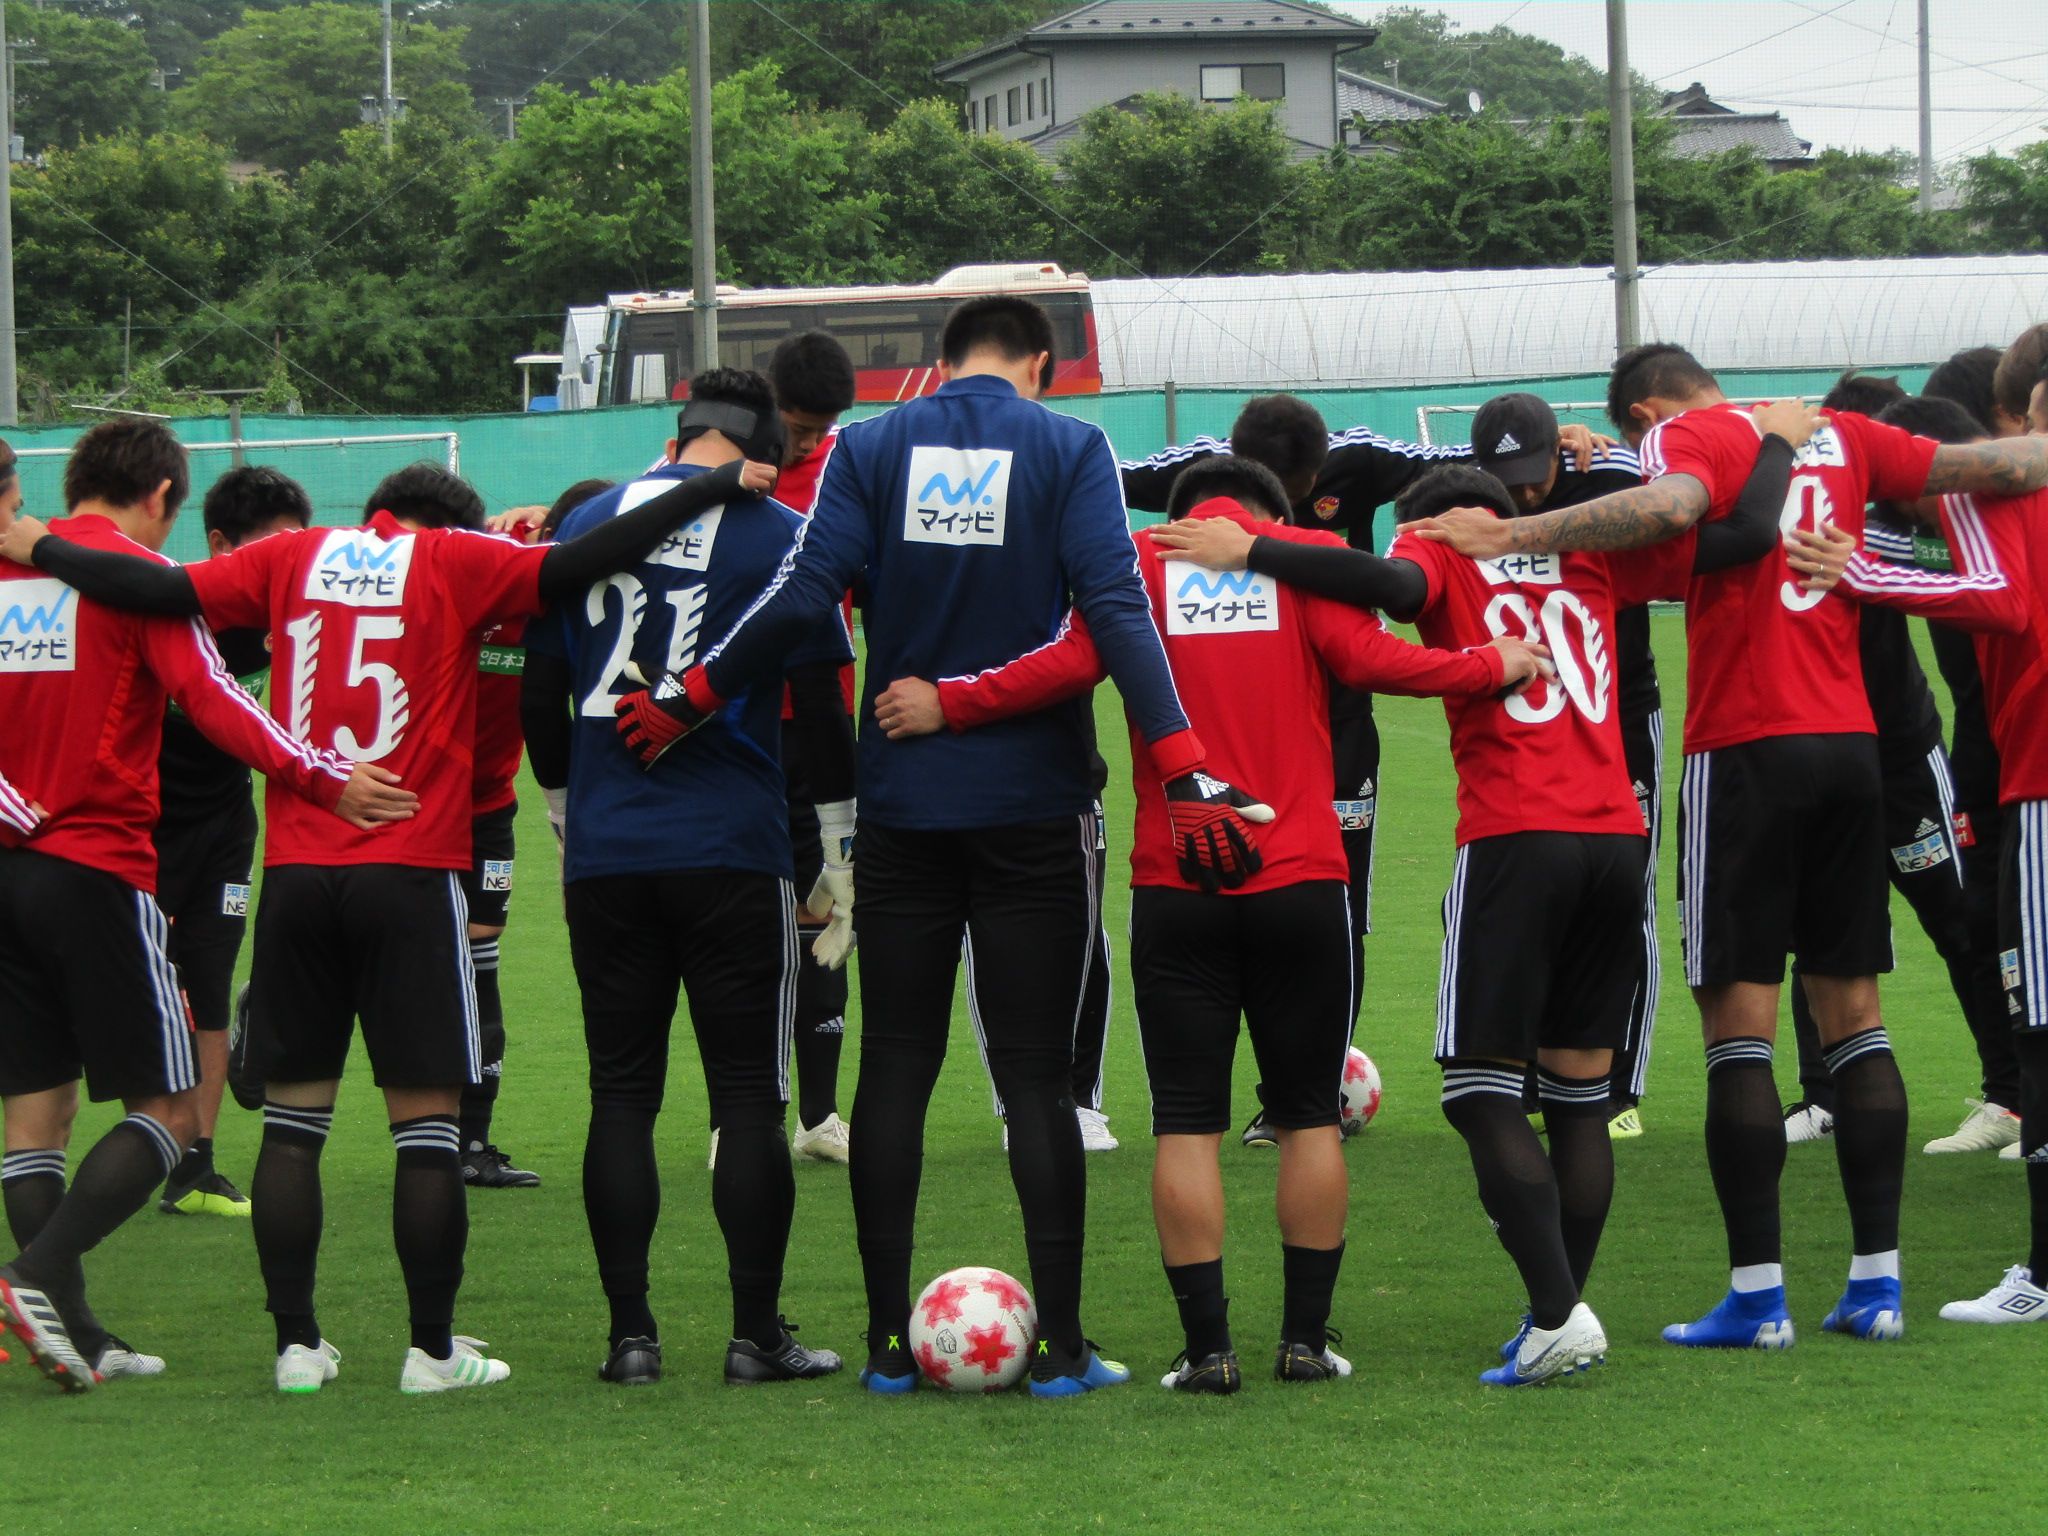 天皇杯 Jfa 第99回全日本サッカー選手権大会 Joh Page 楽天ブログ